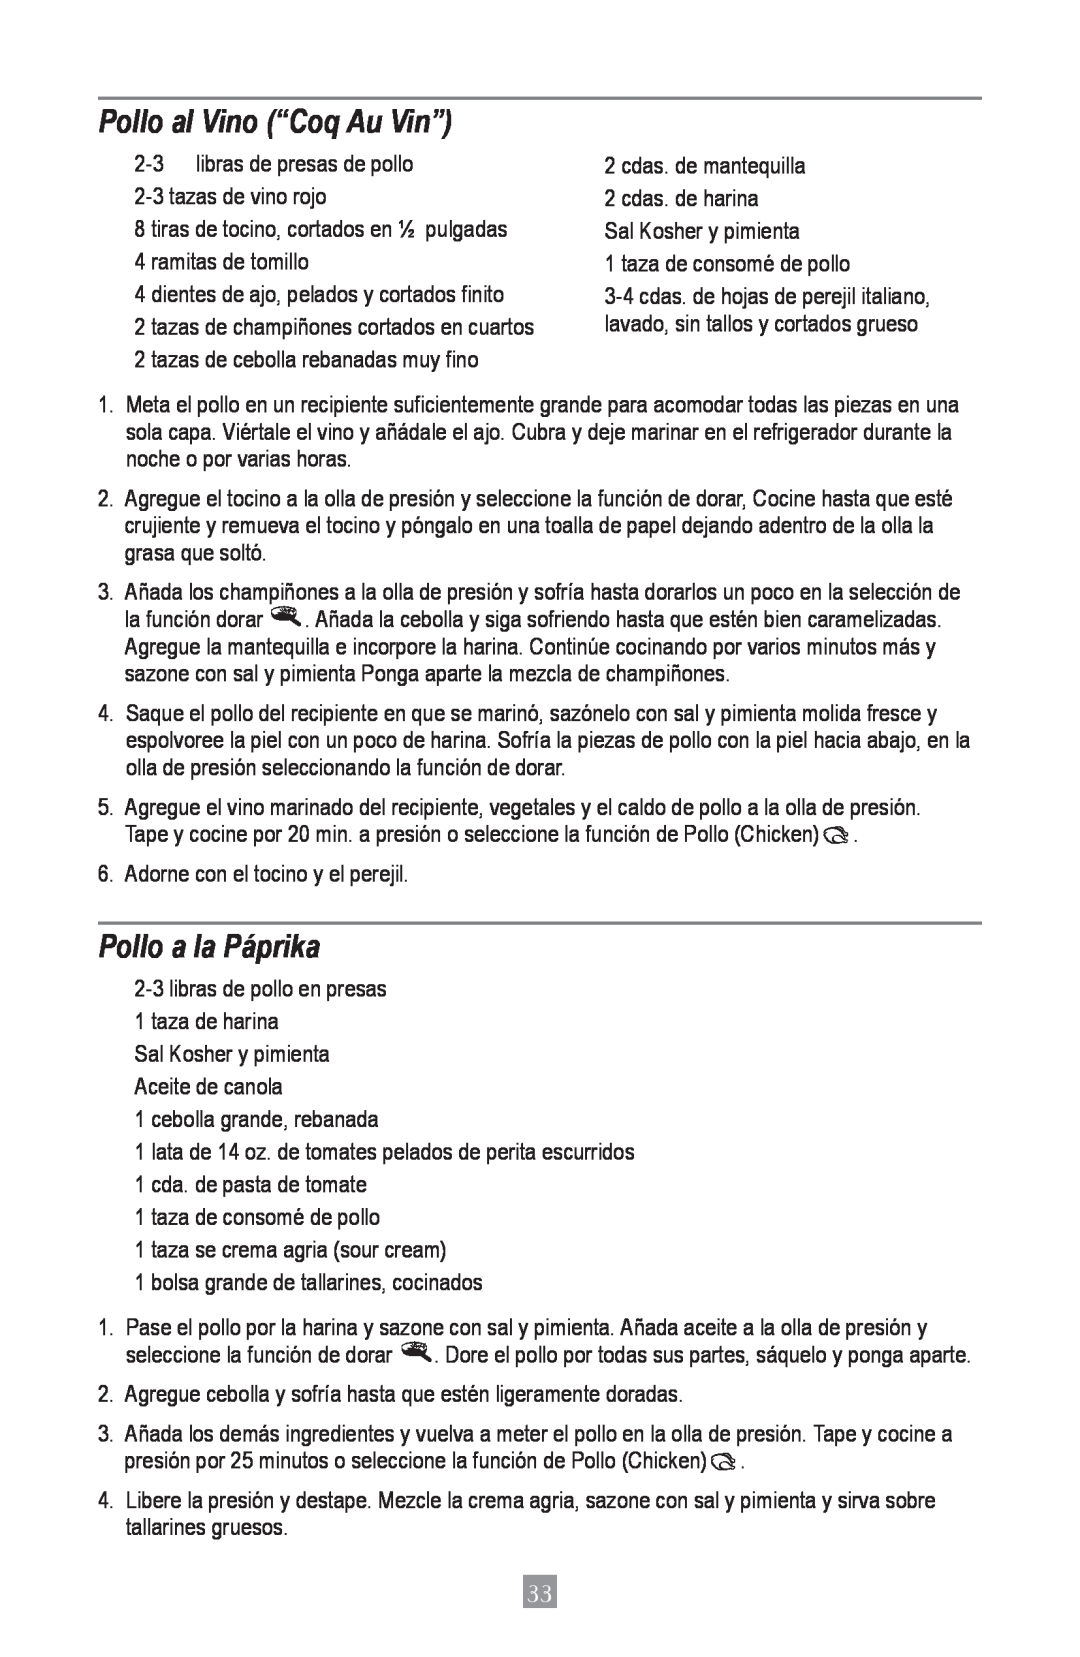 Oster 4801, Oster Digital Pressure Cooker instruction manual Pollo al Vino “Coq Au Vin”, Pollo a la Páprika 